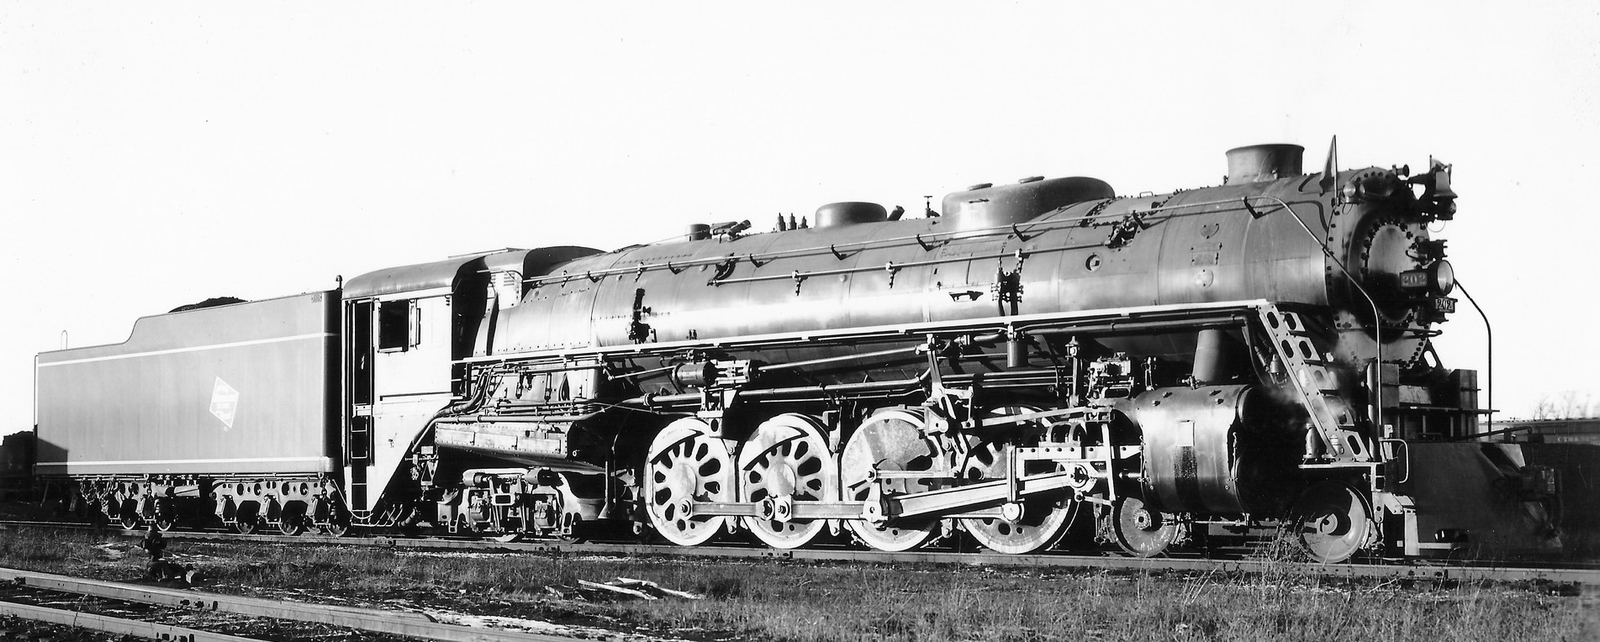 S-2 No. 202 in November 1937 in Bensenville, Illinois